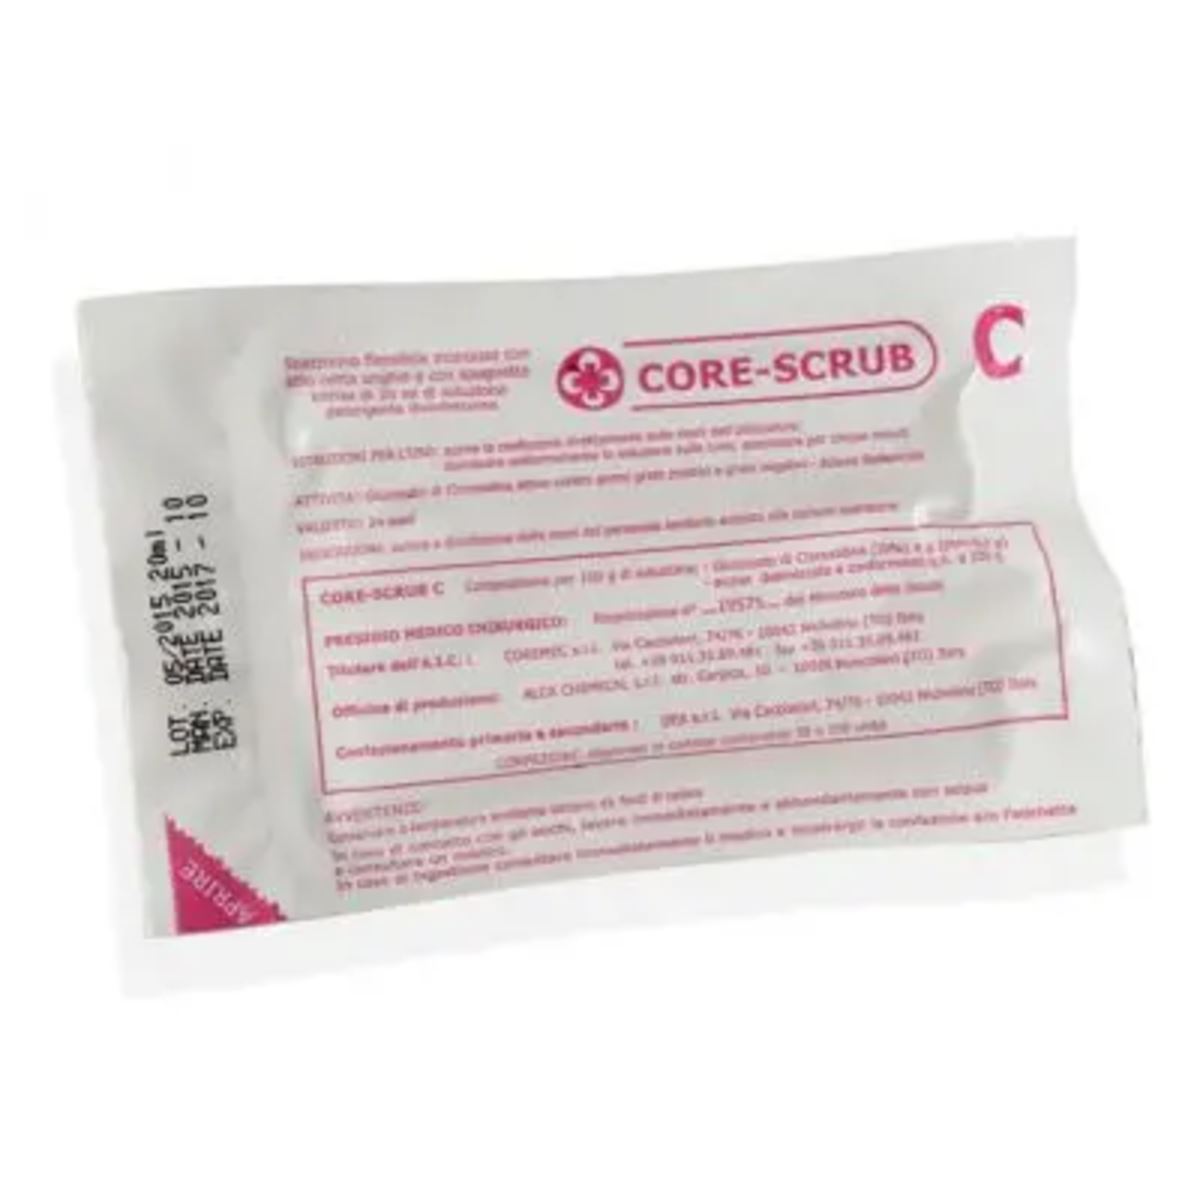 Kit Spazzolino chirurgico preoperatorio CORE-SCRUB C alla clorexidina in anteprima